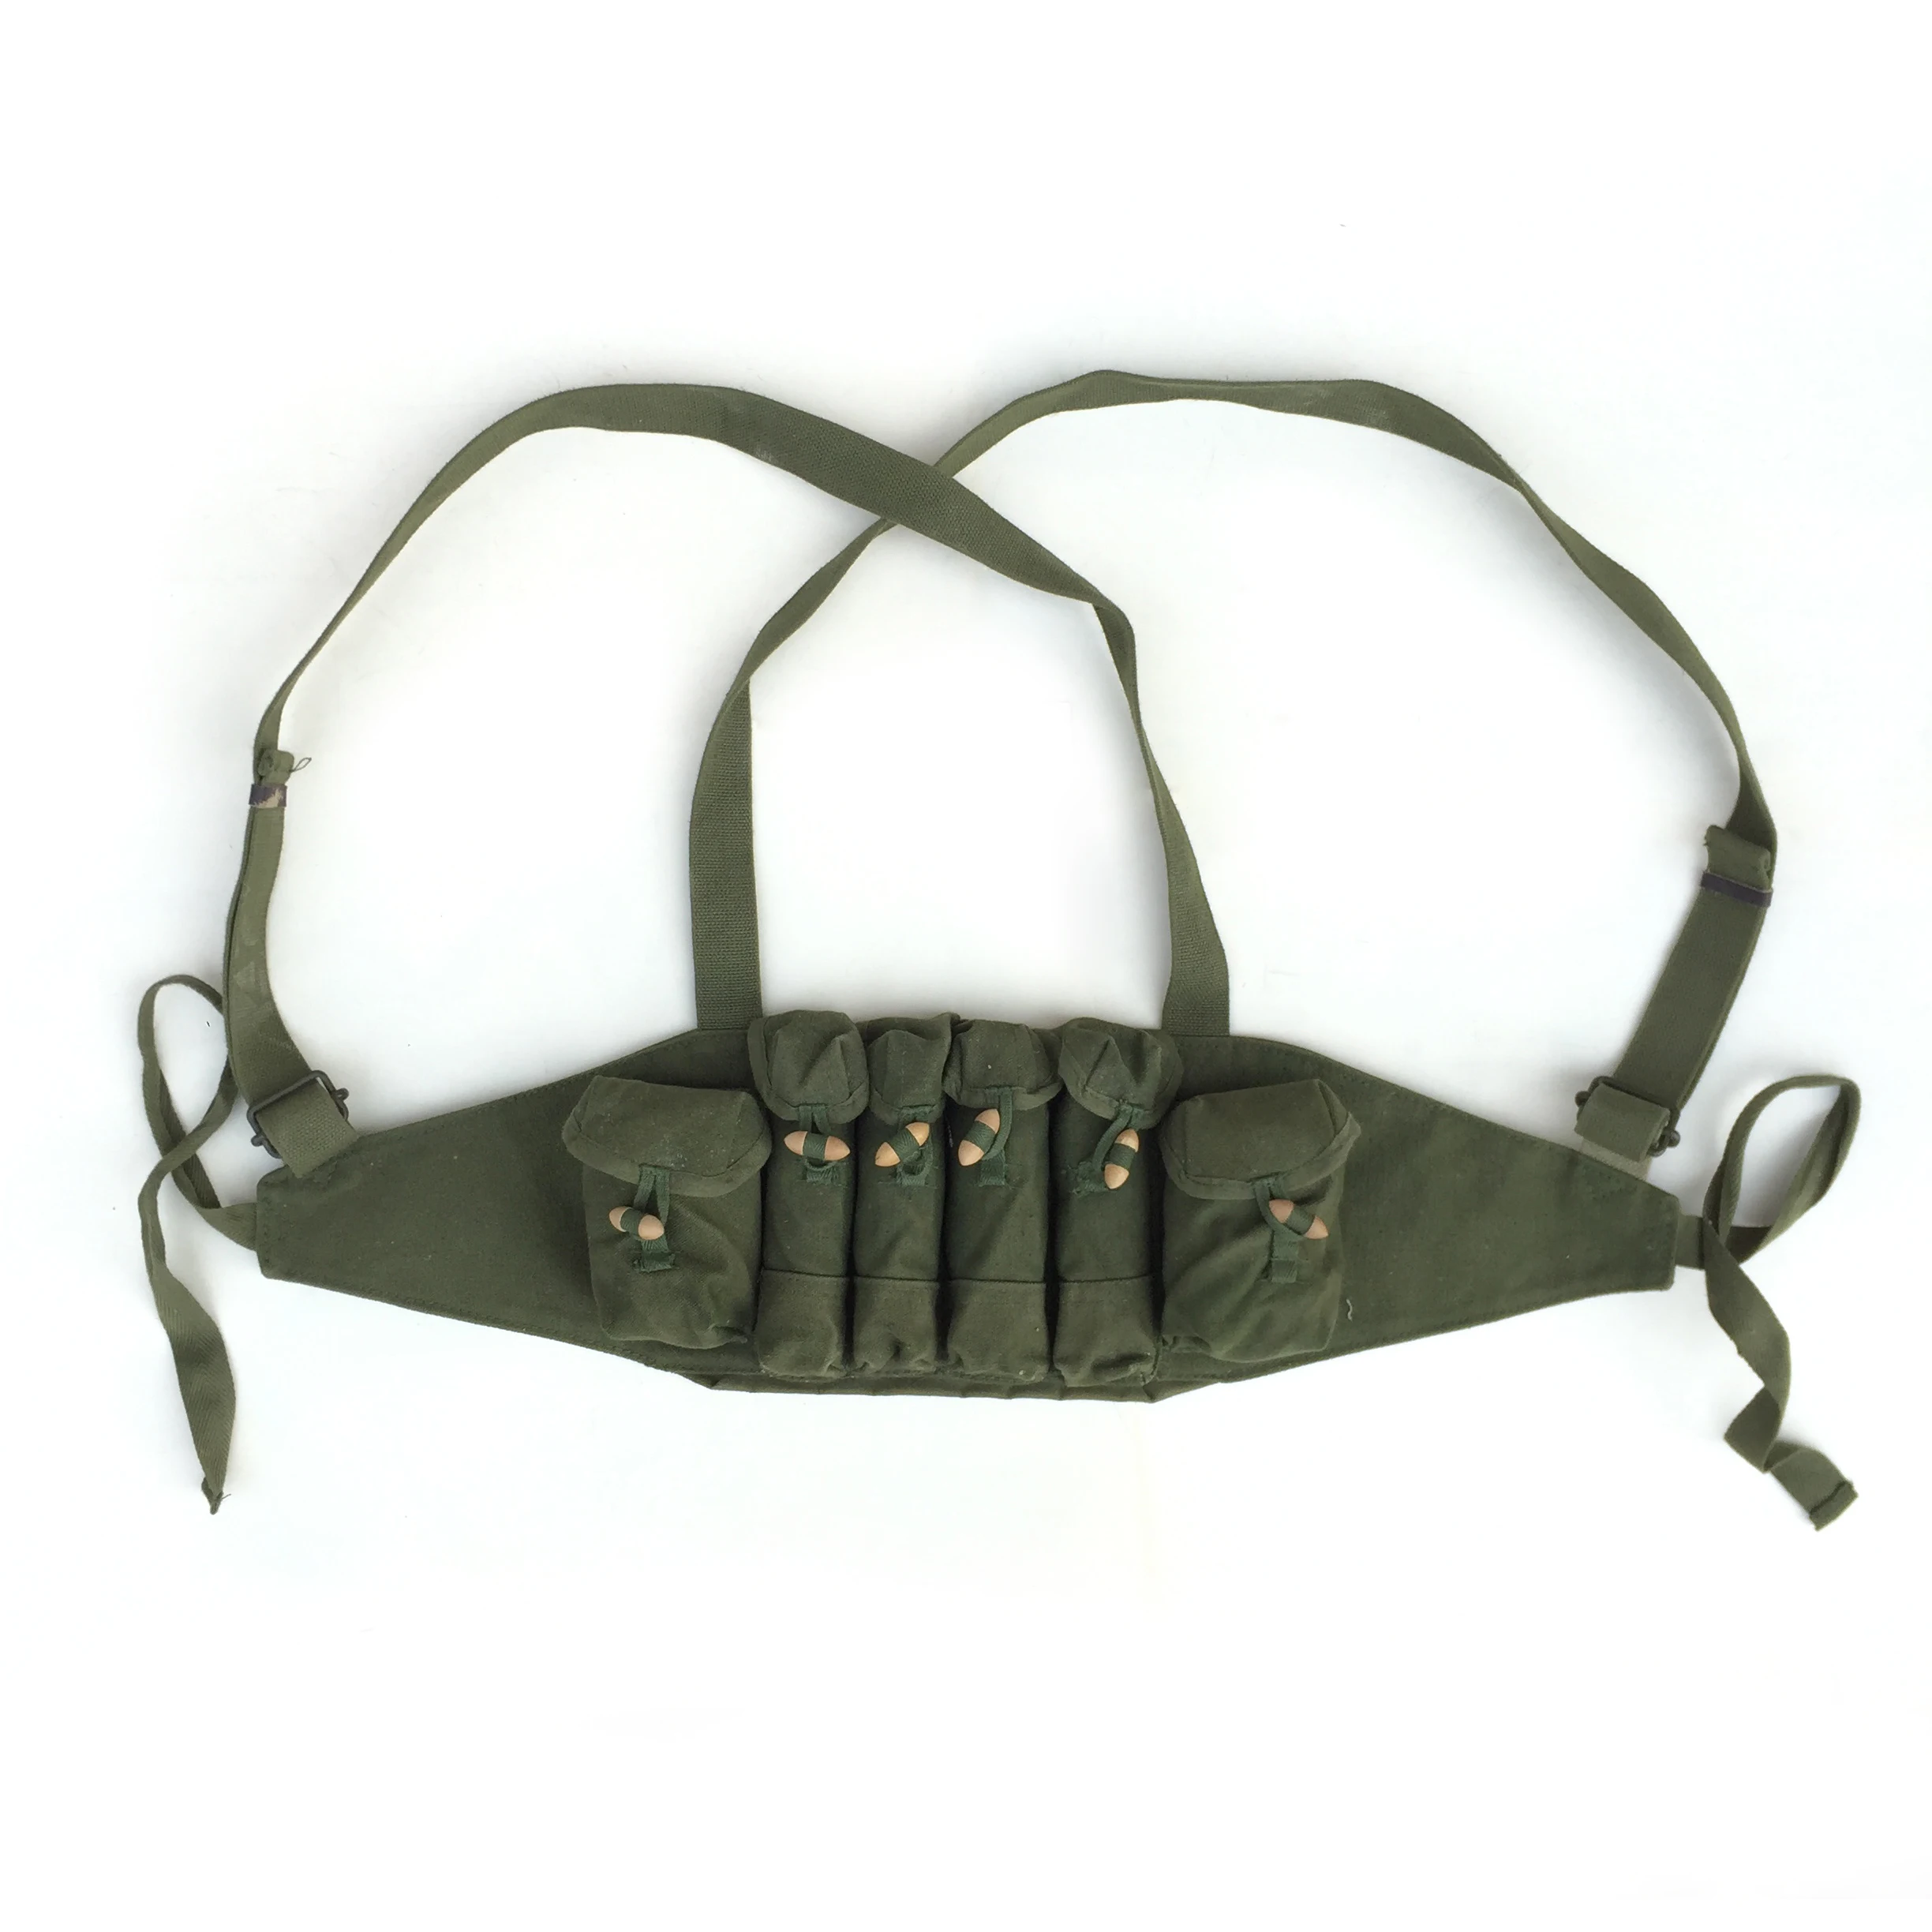 Bolsa de balas de Micro percusión Original del ejército de China, equipo de pecho, bolsa de munición, CN10305